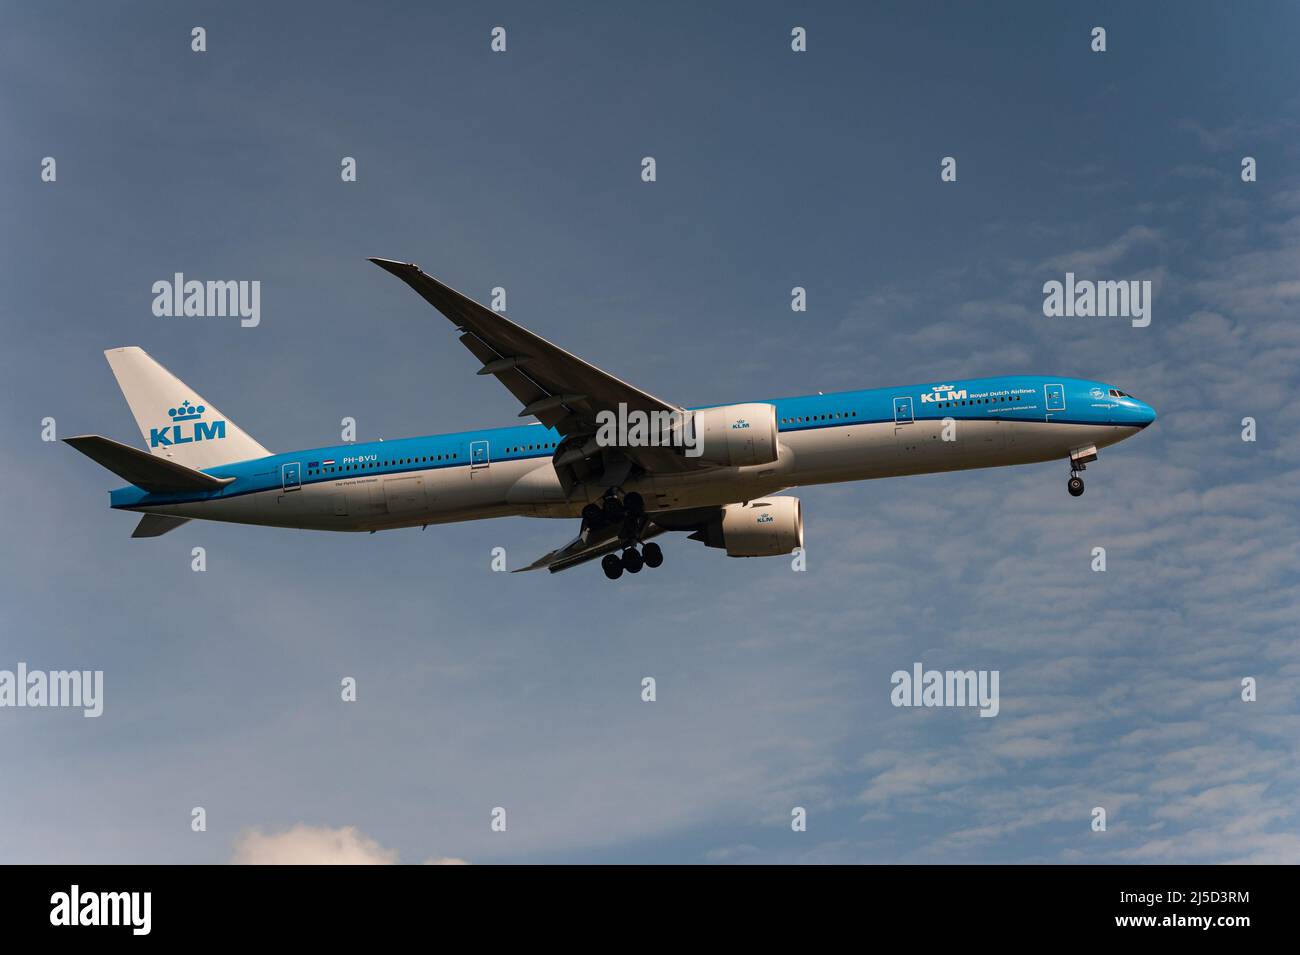 29 novembre 2021, Singapour, République de Singapour, Asie - Une compagnie aérienne néerlandaise KLM Boeing 777-300 ER avion passager avec enregistrement pH-BVU sur approche à l'aéroport international de Changi. KLM est membre de l'alliance aérienne SkyTeam. [traduction automatique] Banque D'Images